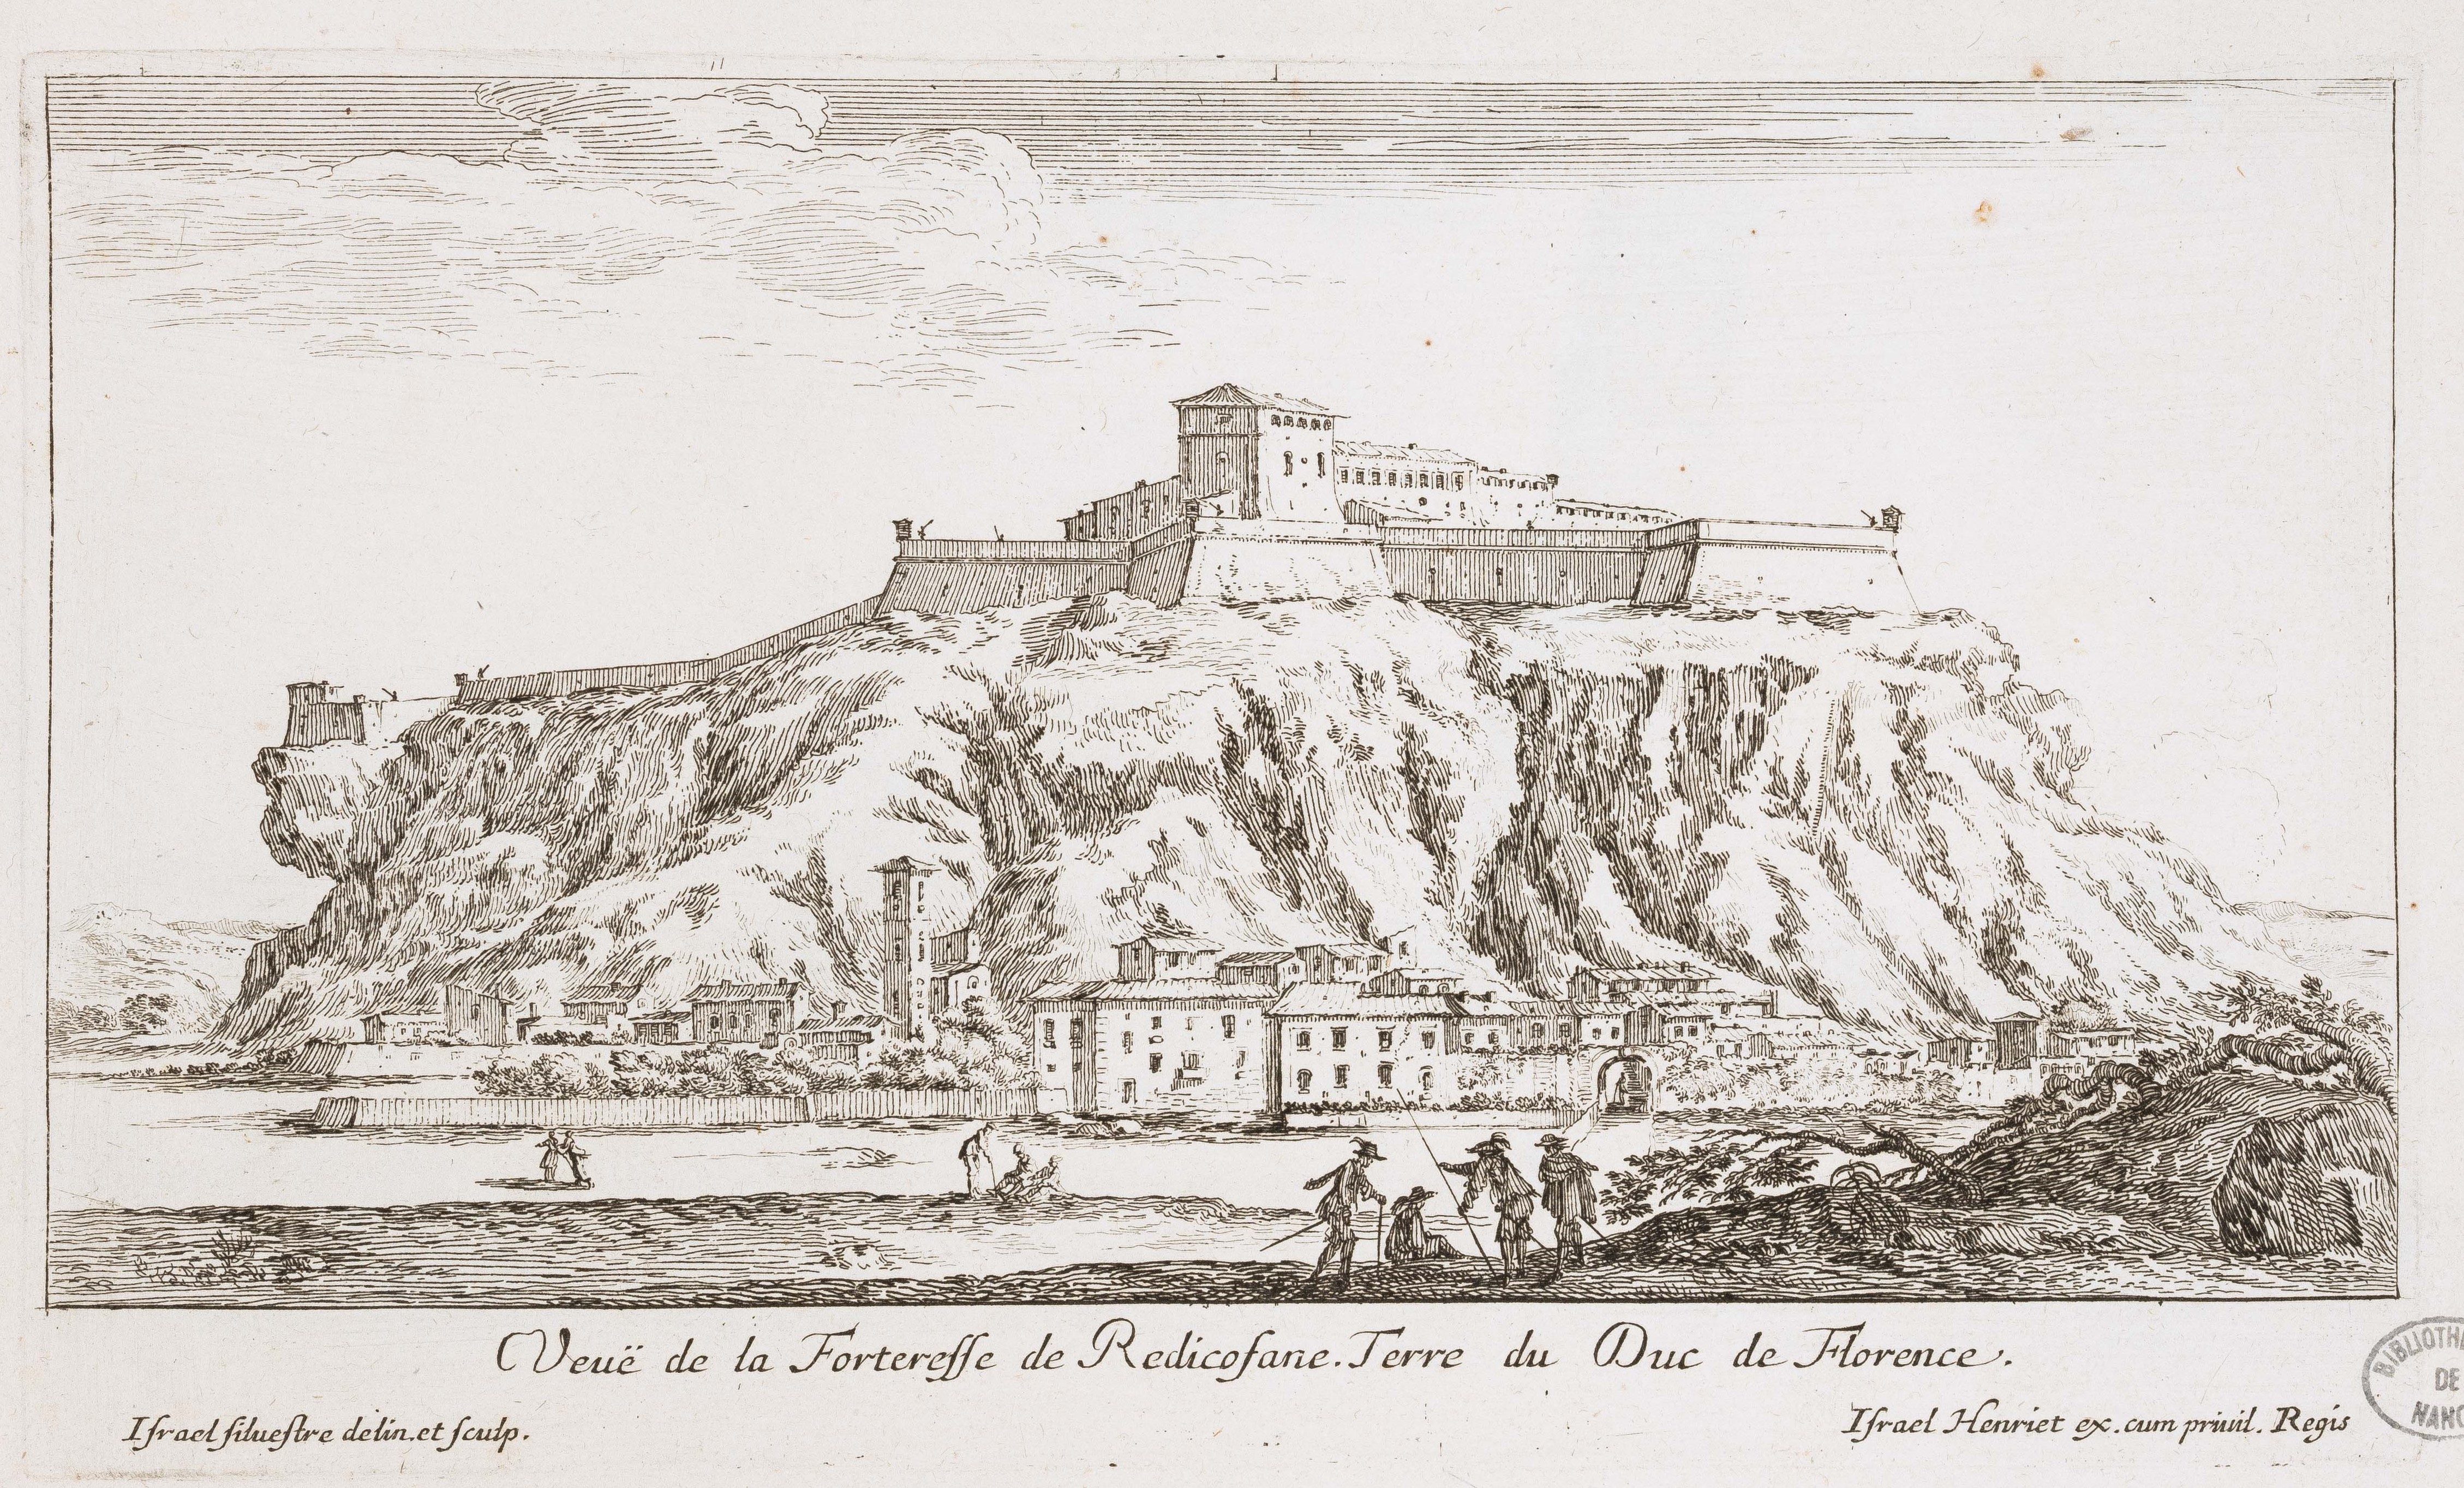 Israël Silvestre : Veuë de la Forteresse de Redicofane. Terre du Duc de Florence.